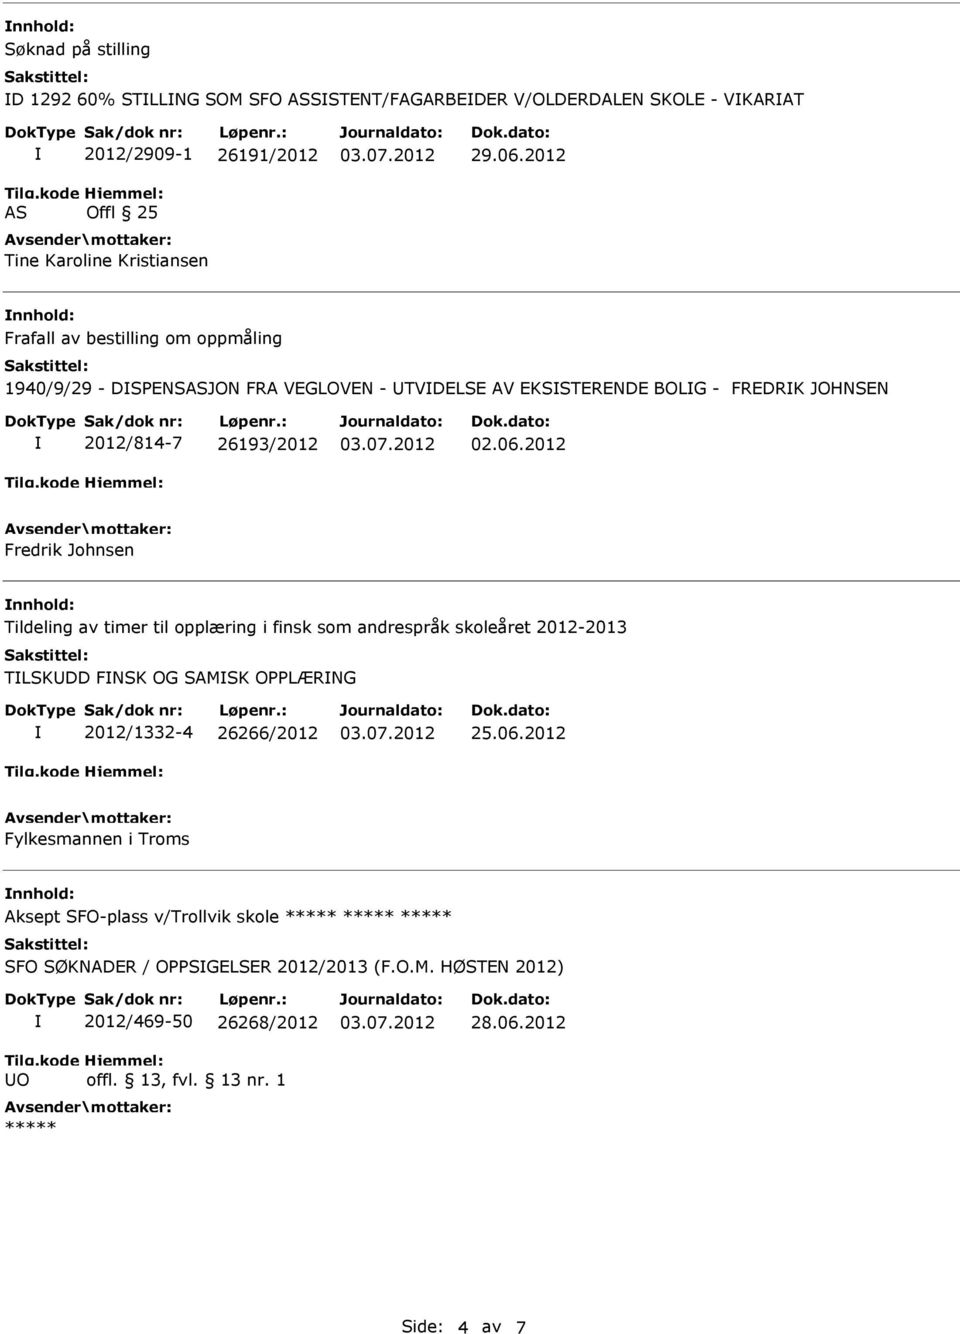 2012 Frafall av bestilling om oppmåling 1940/9/29 - DSPNSASJON FRA VGLOVN - TVDLS AV KSSTRND BOLG - FRDRK JOHNSN 2012/814-7 26193/2012 02.06.